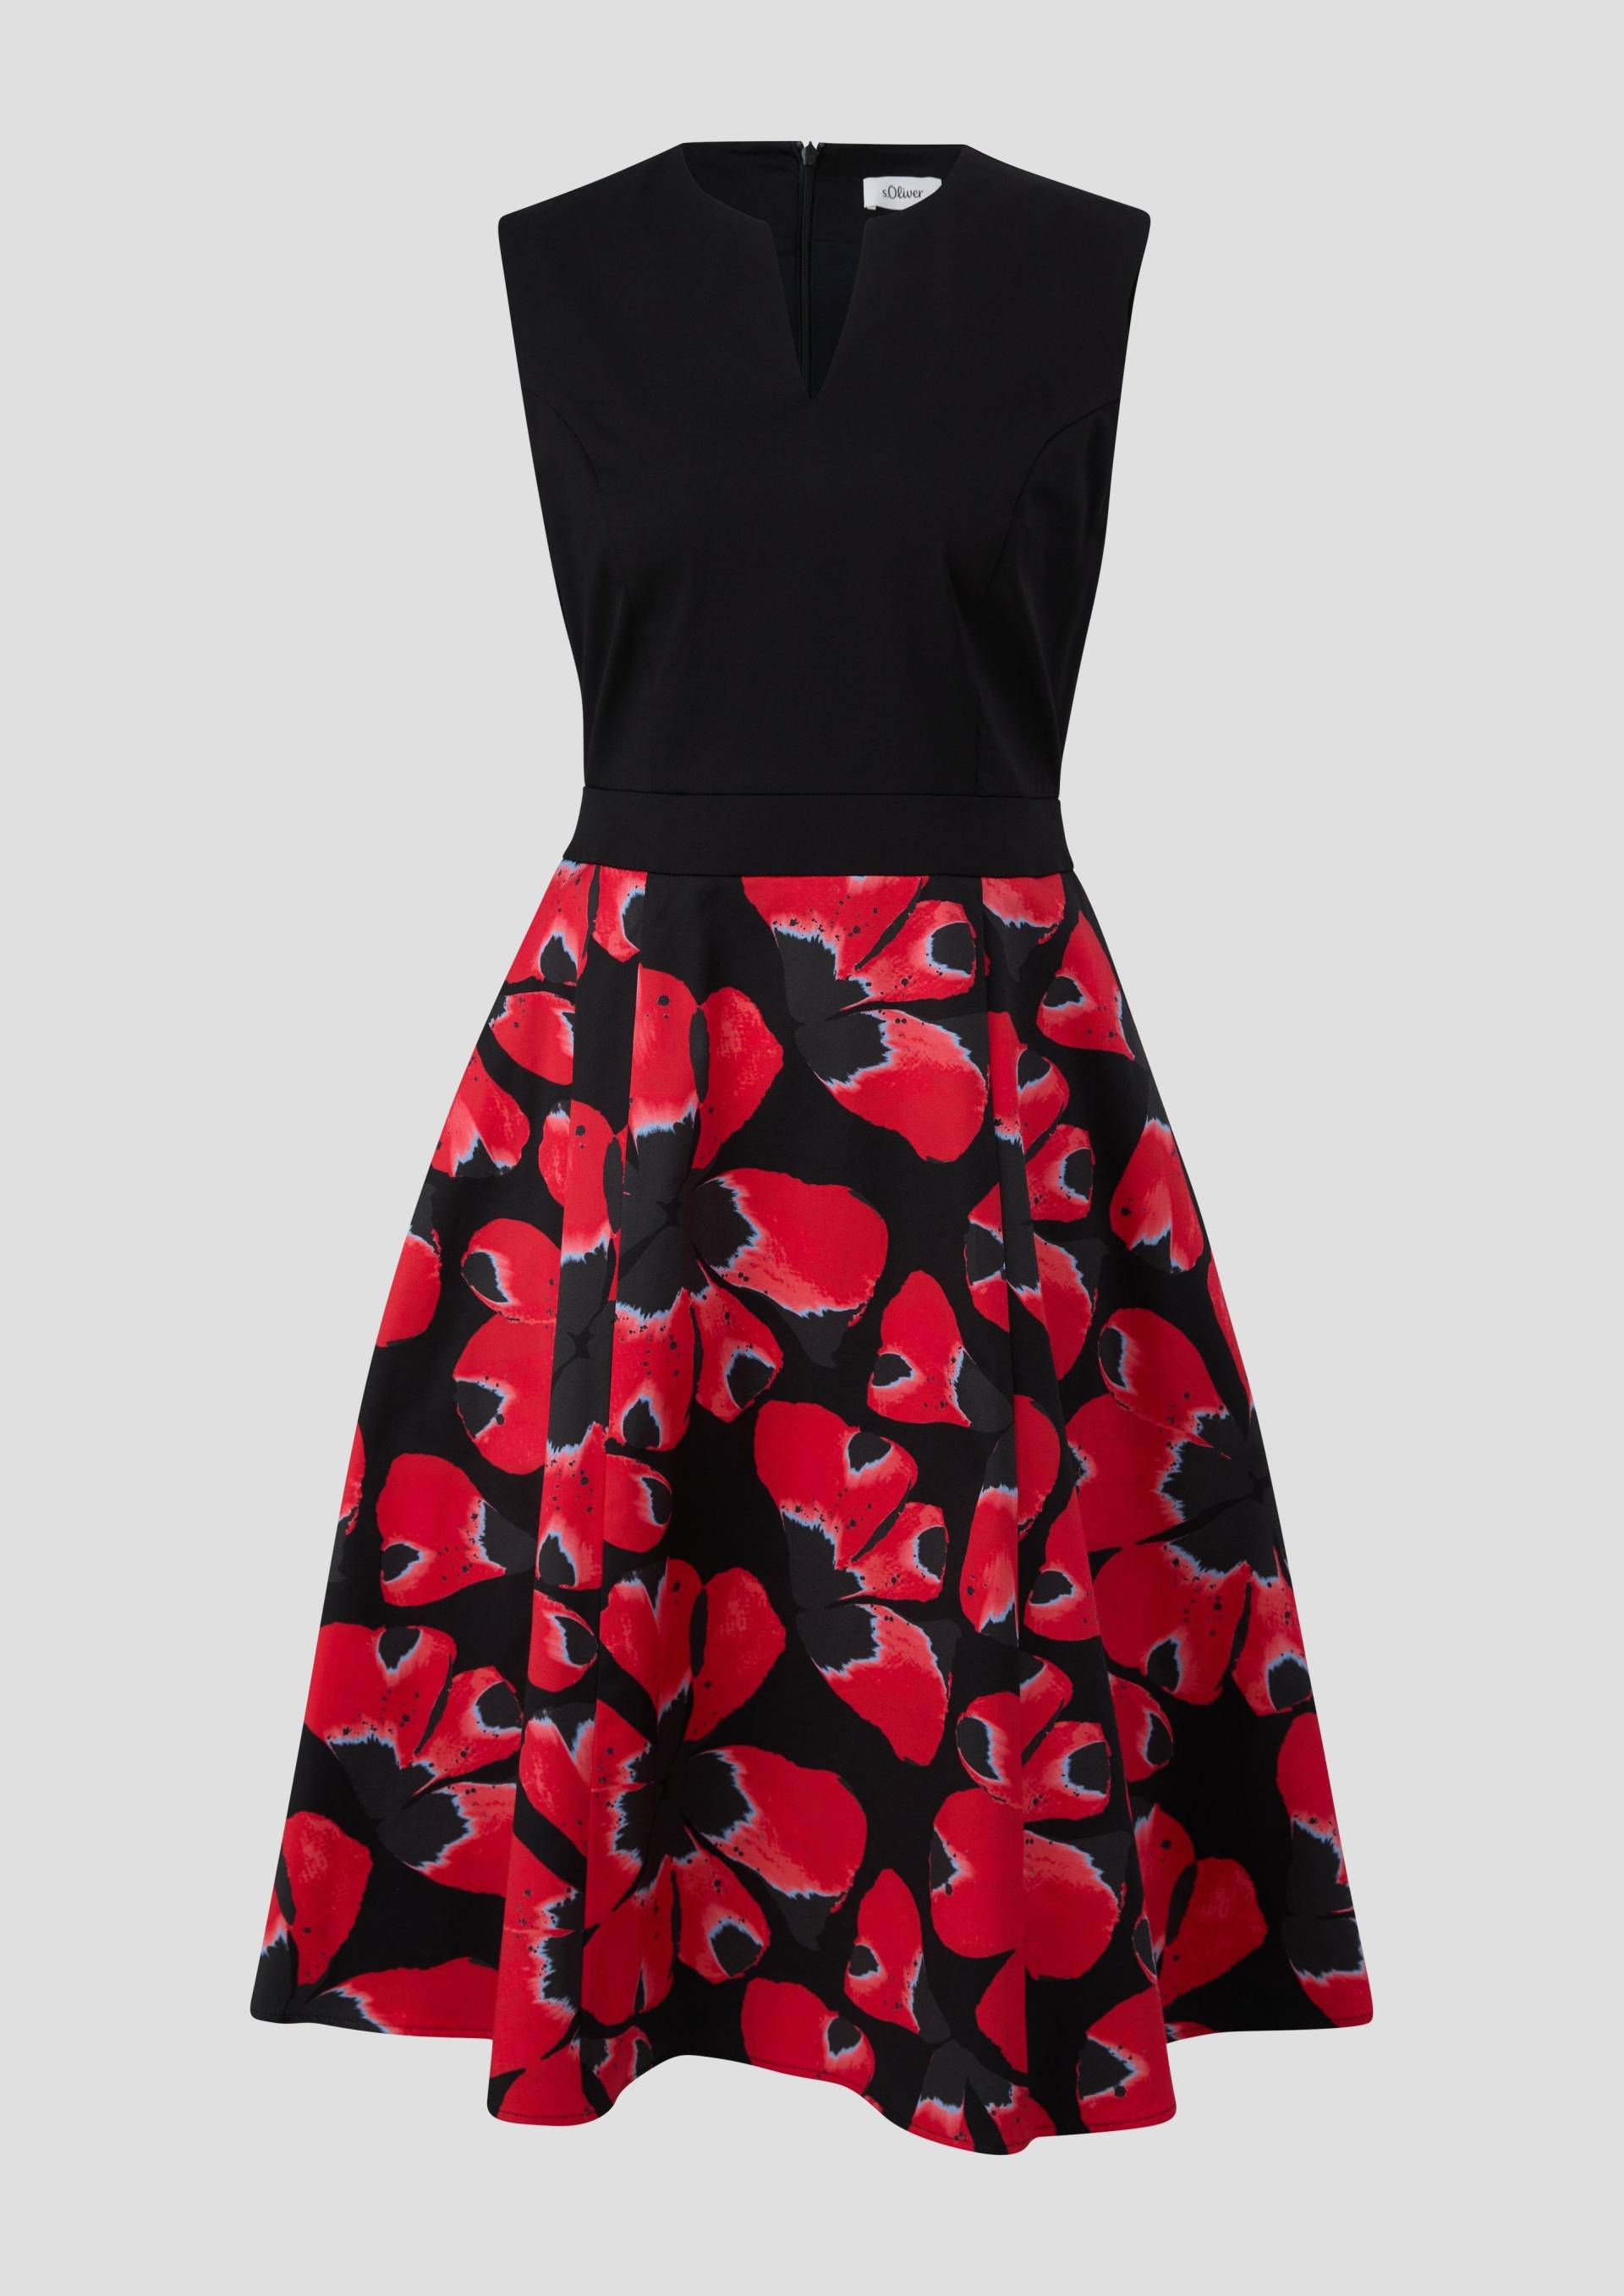 s.Oliver - Floral gemustertes Kleid mit Tunika-Ausschnitt, Damen, schwarz von s.Oliver